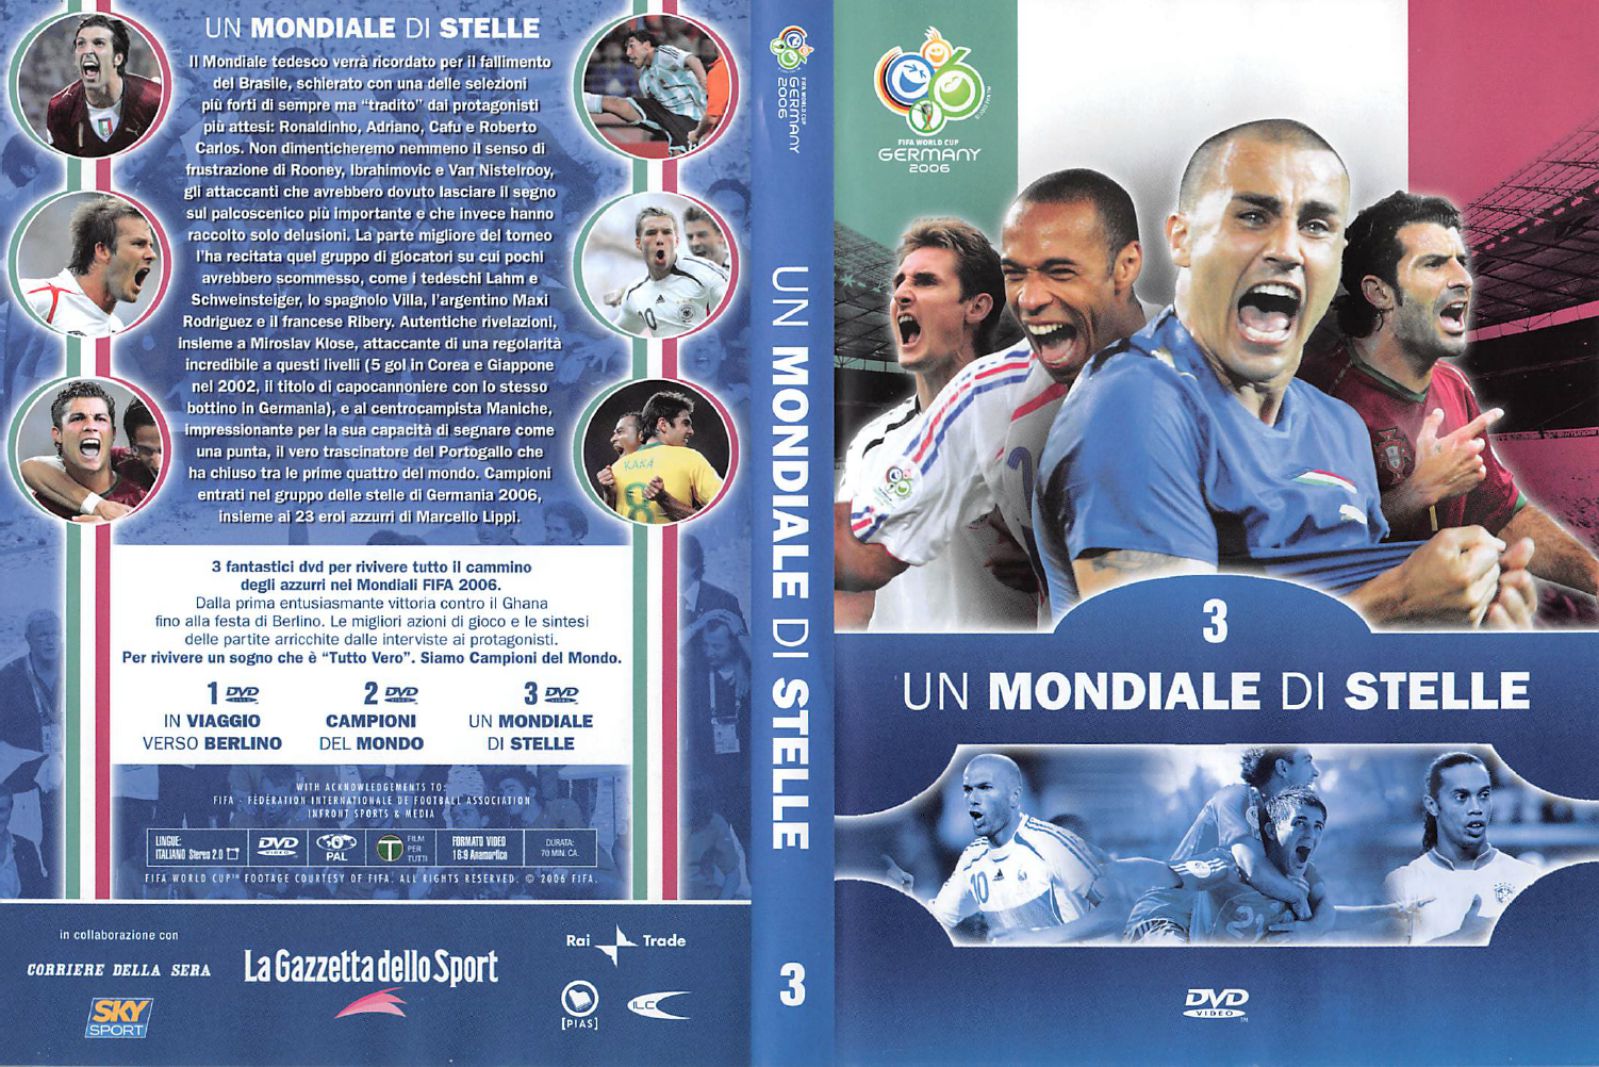 Nel 2006 altre sue composizioni vengono scelte per accompagnare le immagini dei mondiali di Germania nei DVD della Gazzetta dello sport che commemorano la vittoria della nazionale Italiana.